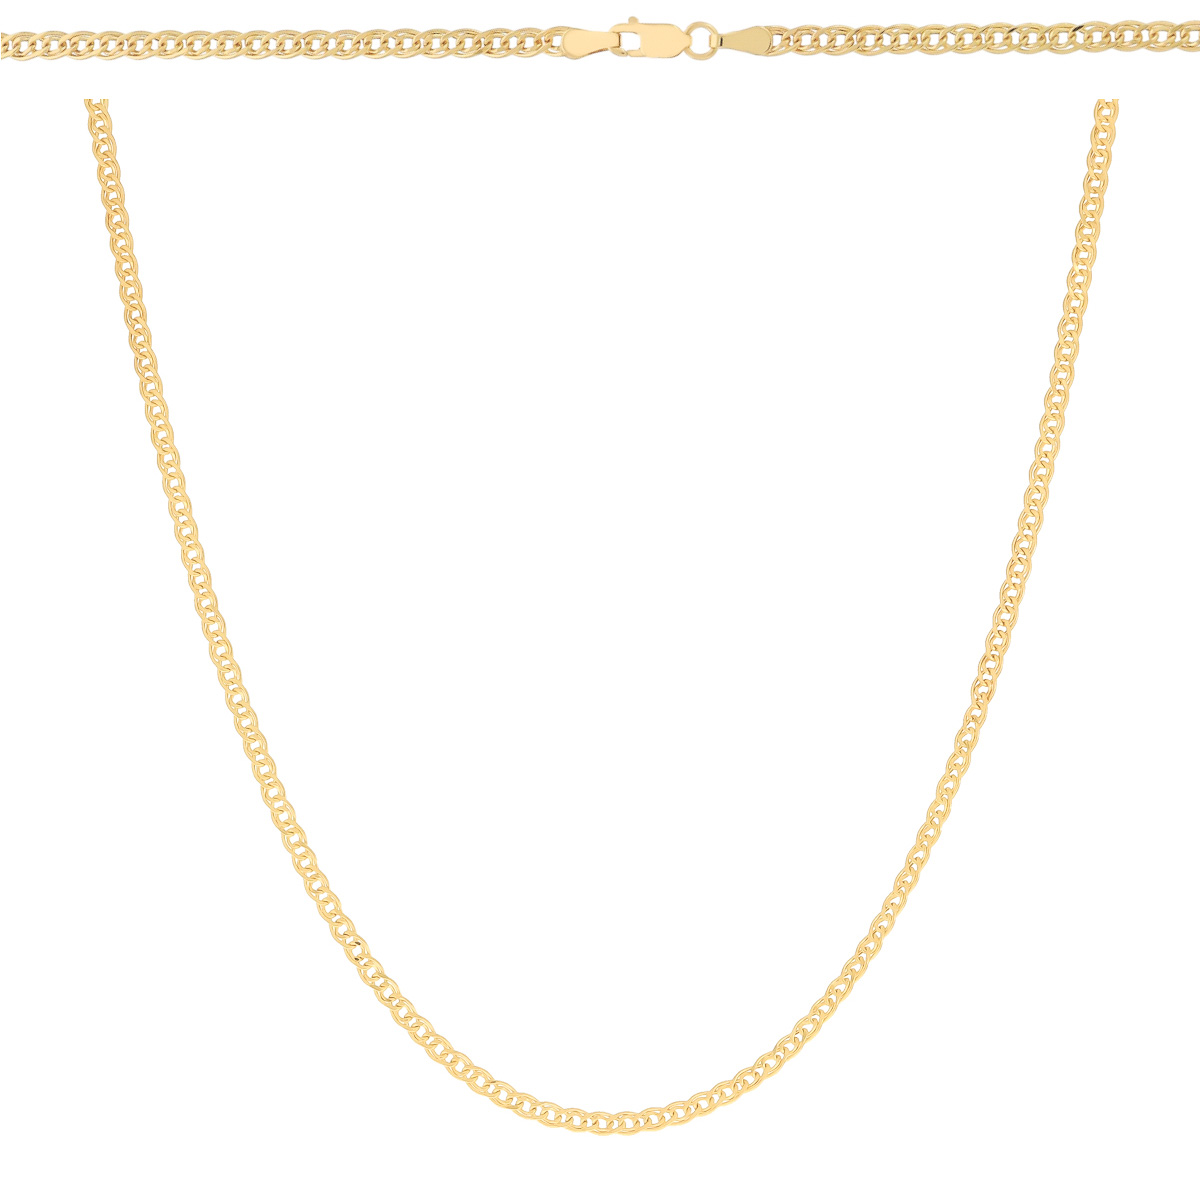 Złoty łańcuszek Mona lisa 60 cm złoto próby 585